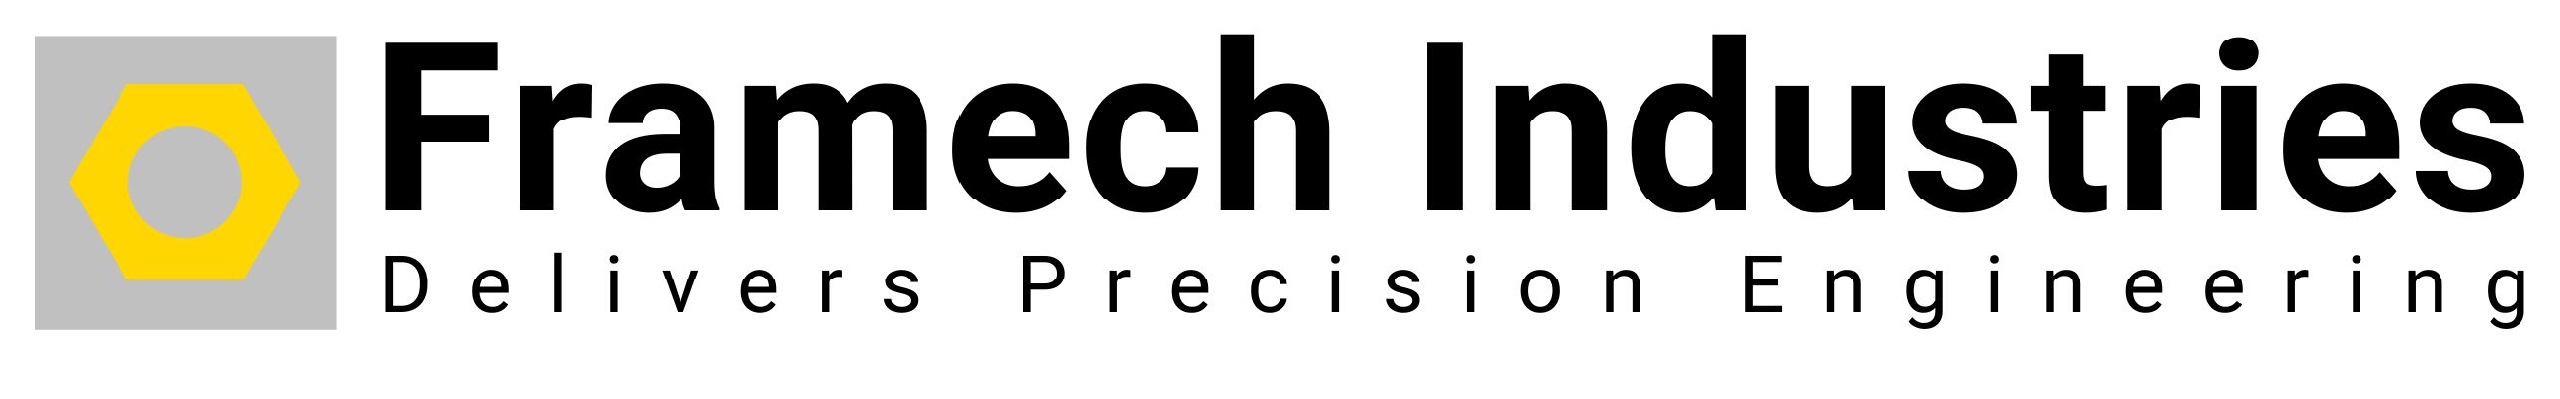 Framech Industries